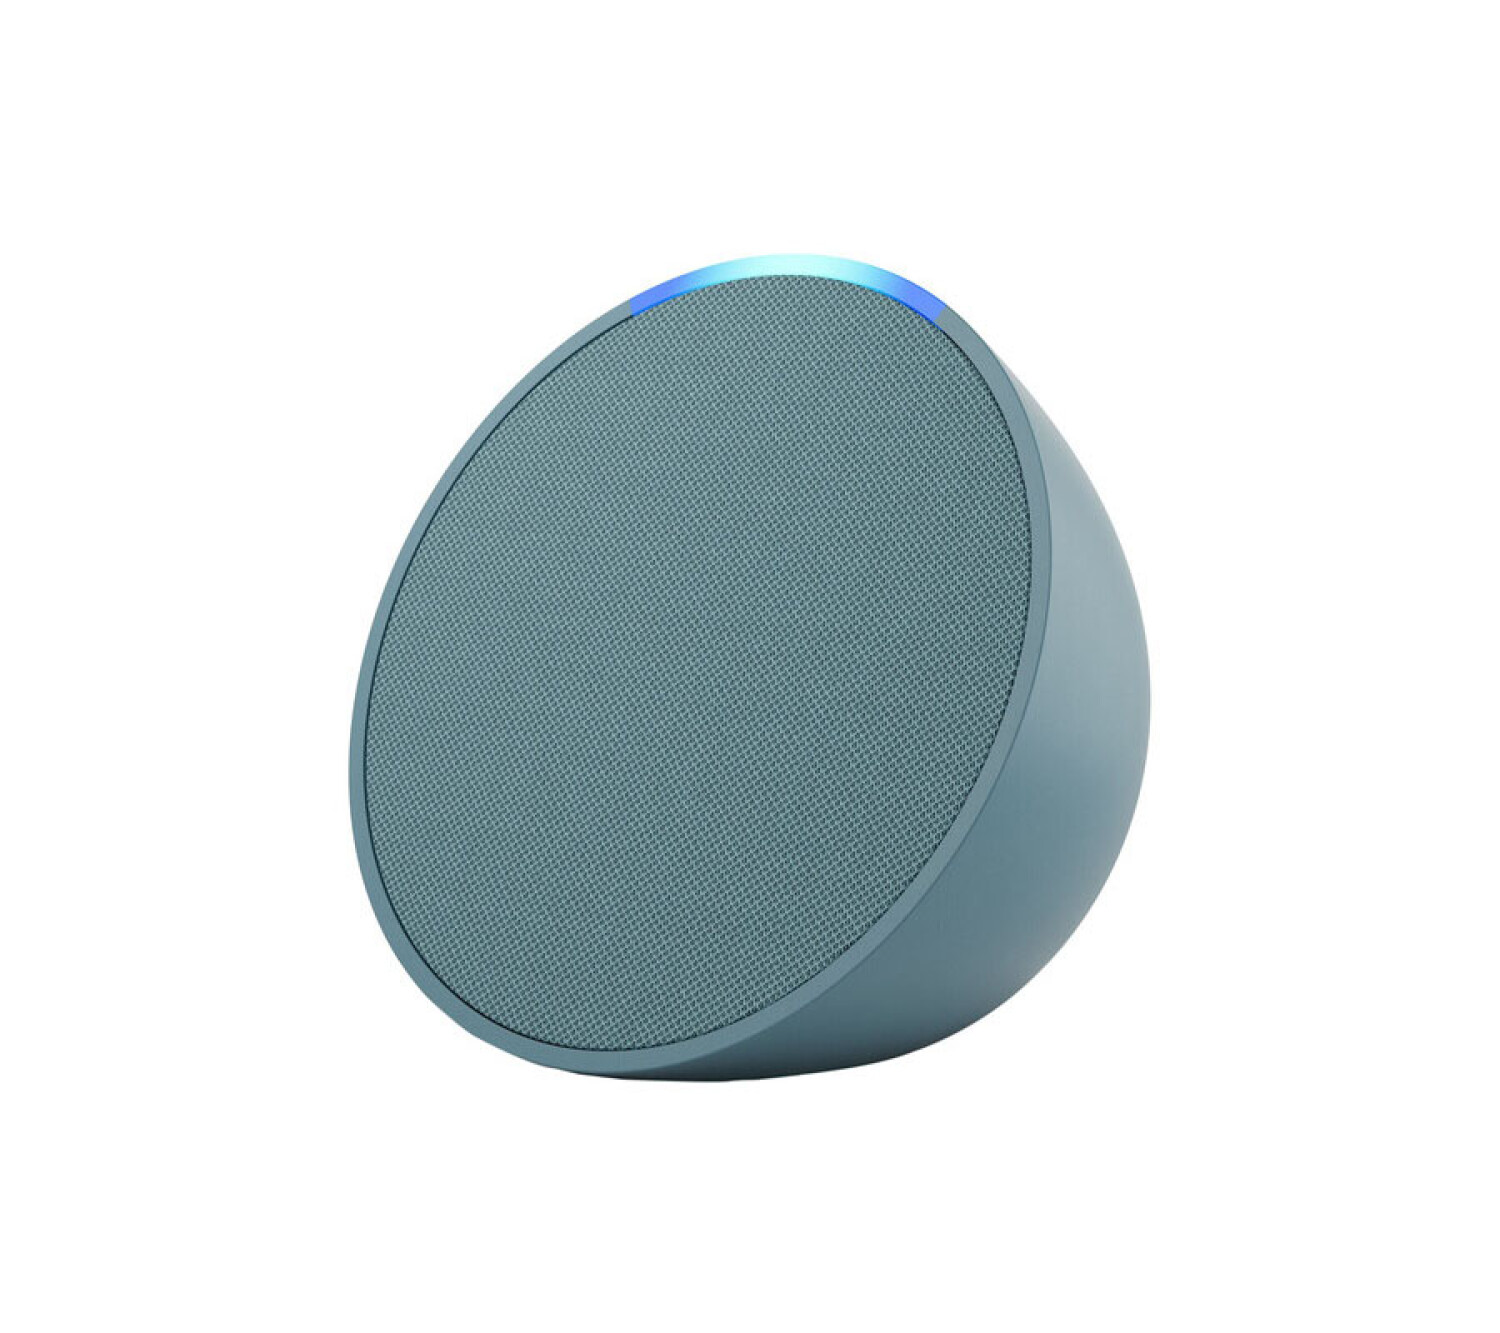 Presentamos el Echo Pop Parlante inteligente y compacto con sonido definido  y Alexa Verde azulado Midnight Teal Device only